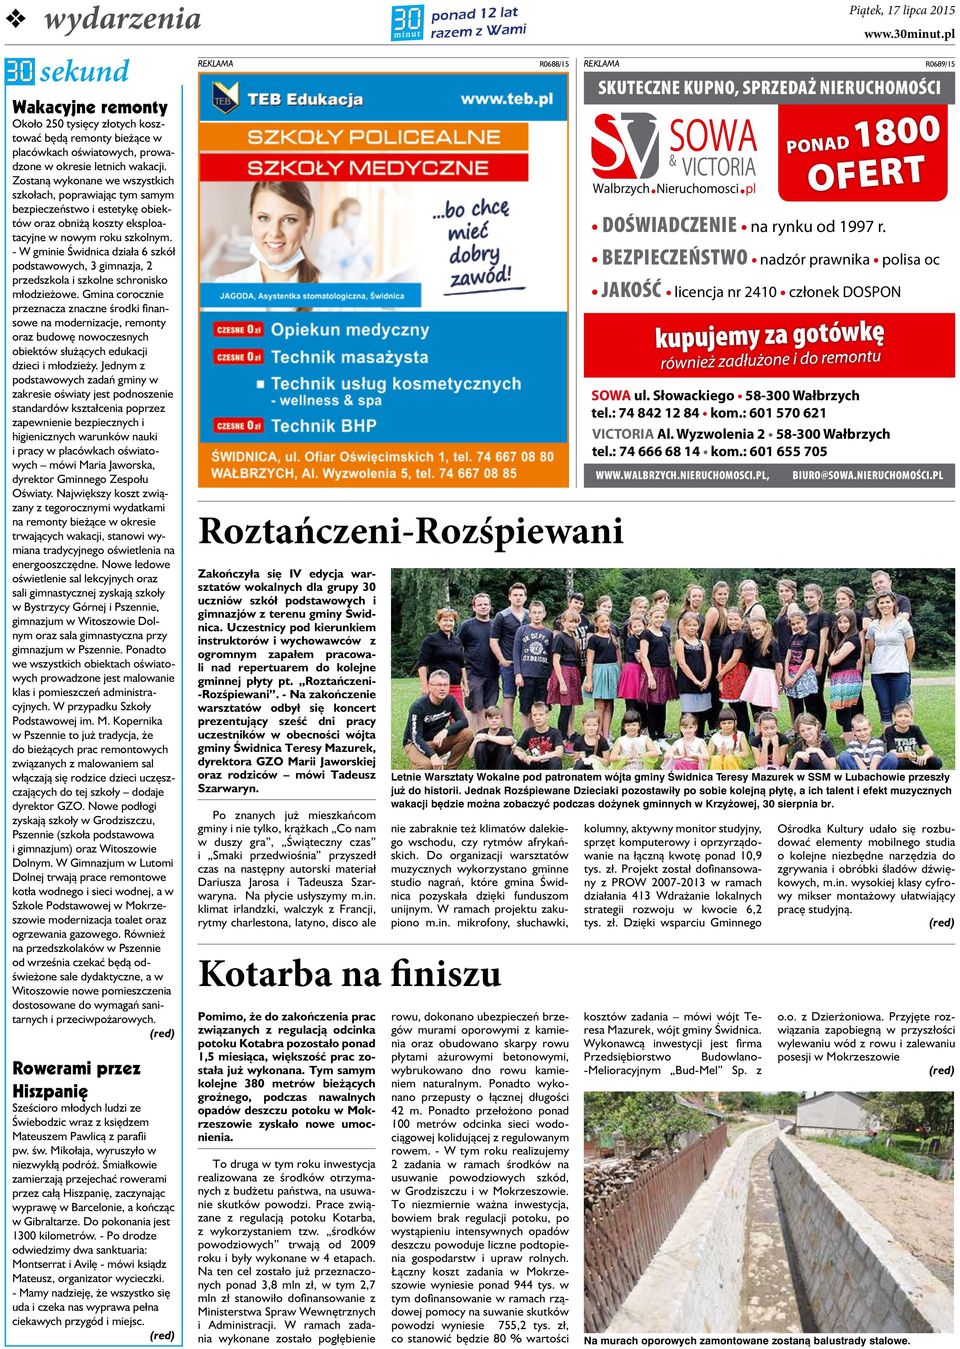 - W gminie Świdnica działa 6 szkół podstawowych, 3 gimnazja, 2 przedszkola i szkolne schronisko młodzieżowe.